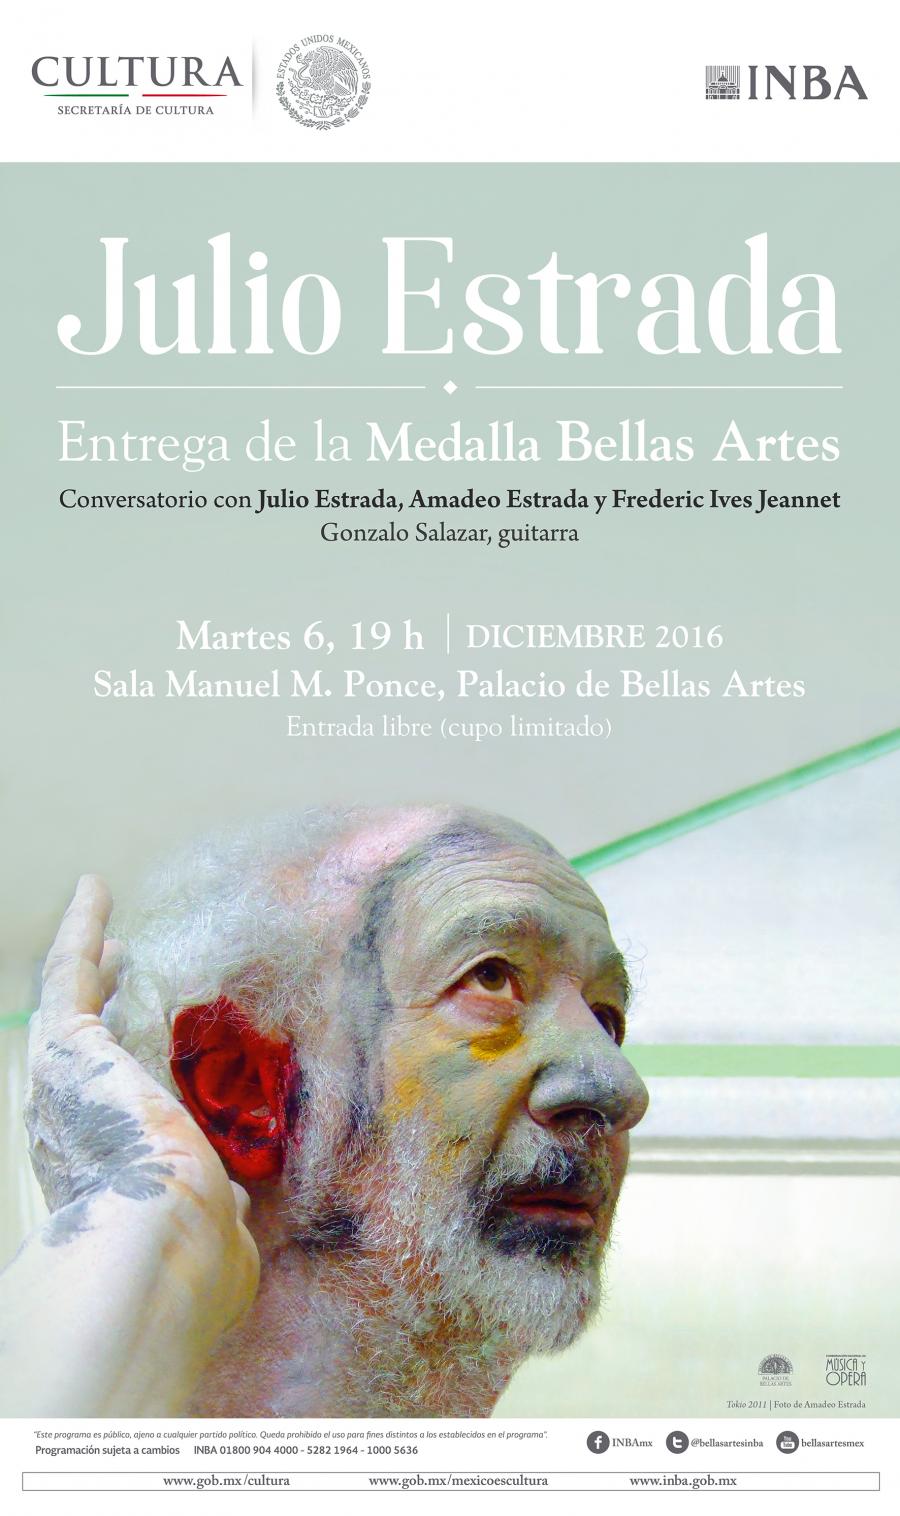 El compositor mexicano Julio Estrada recibirÃ¡ la Medalla Bellas Artes